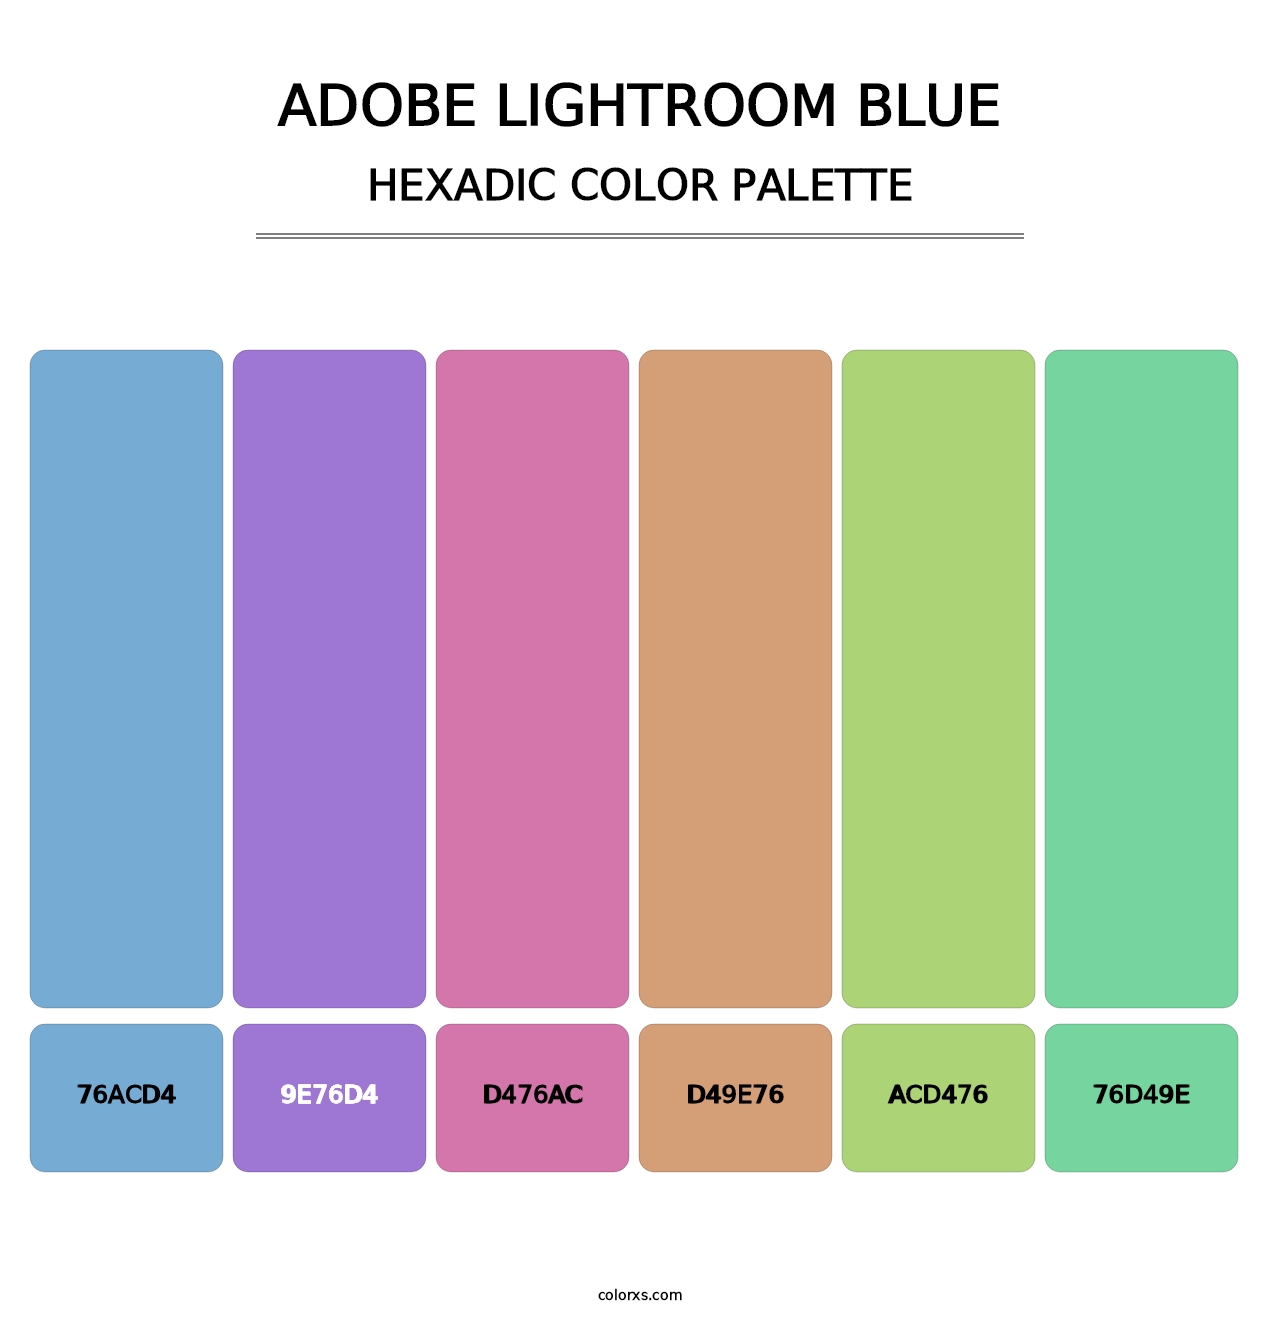 Adobe Lightroom Blue - Hexadic Color Palette